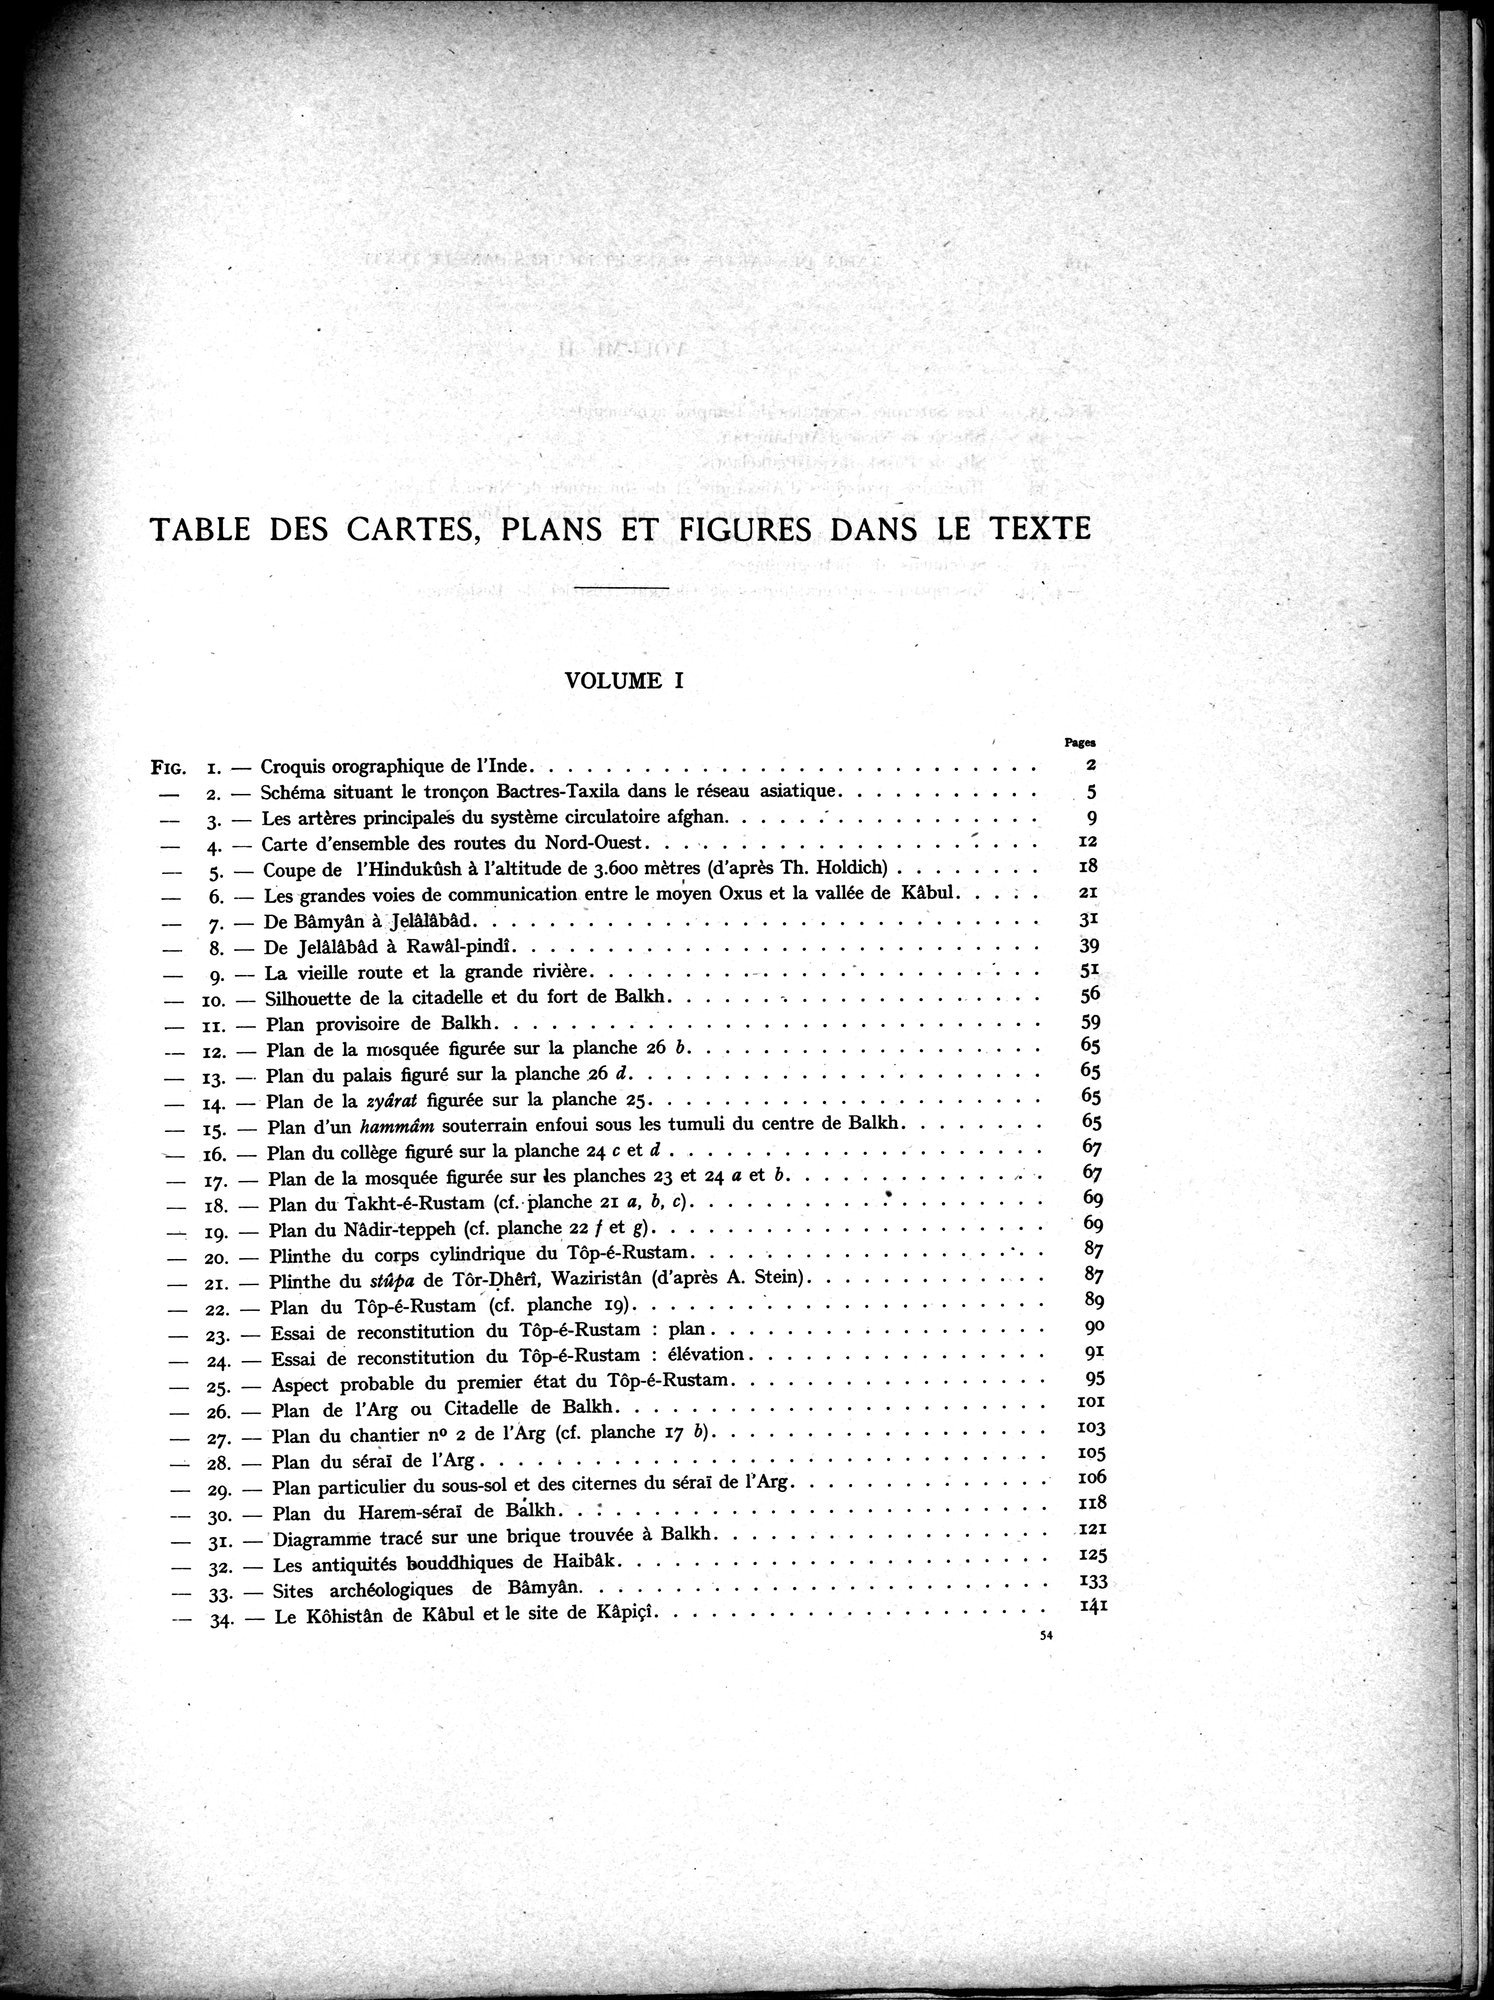 La Vieille Route de l'Inde de Bactres à Taxila : vol.2 / 251 ページ（白黒高解像度画像）